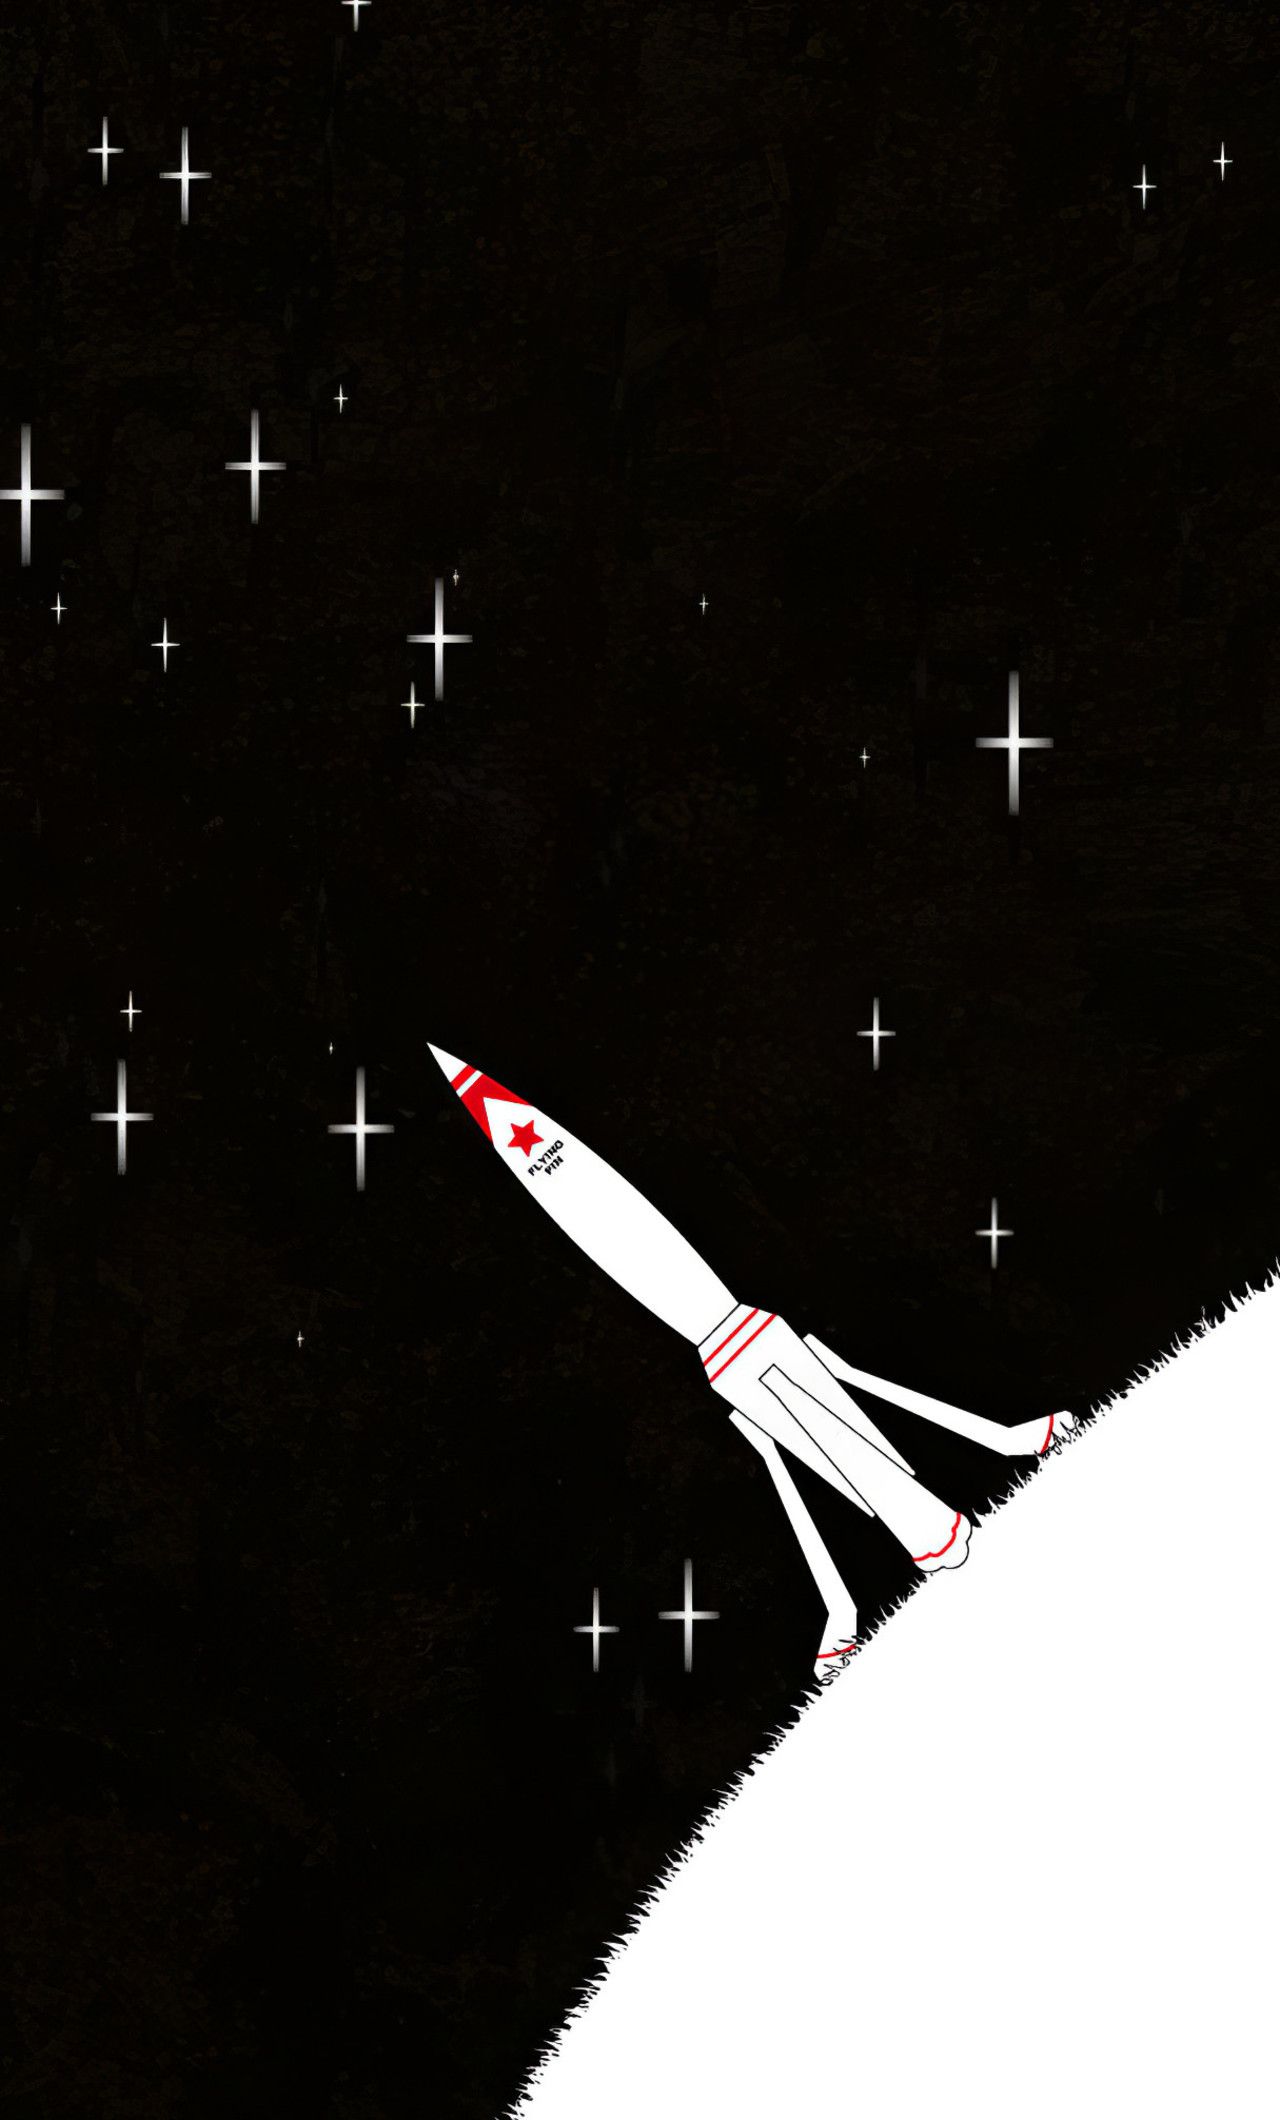 تصویر جذاب و دیدنی  از موشک کیوت با ستاره های دور آن 